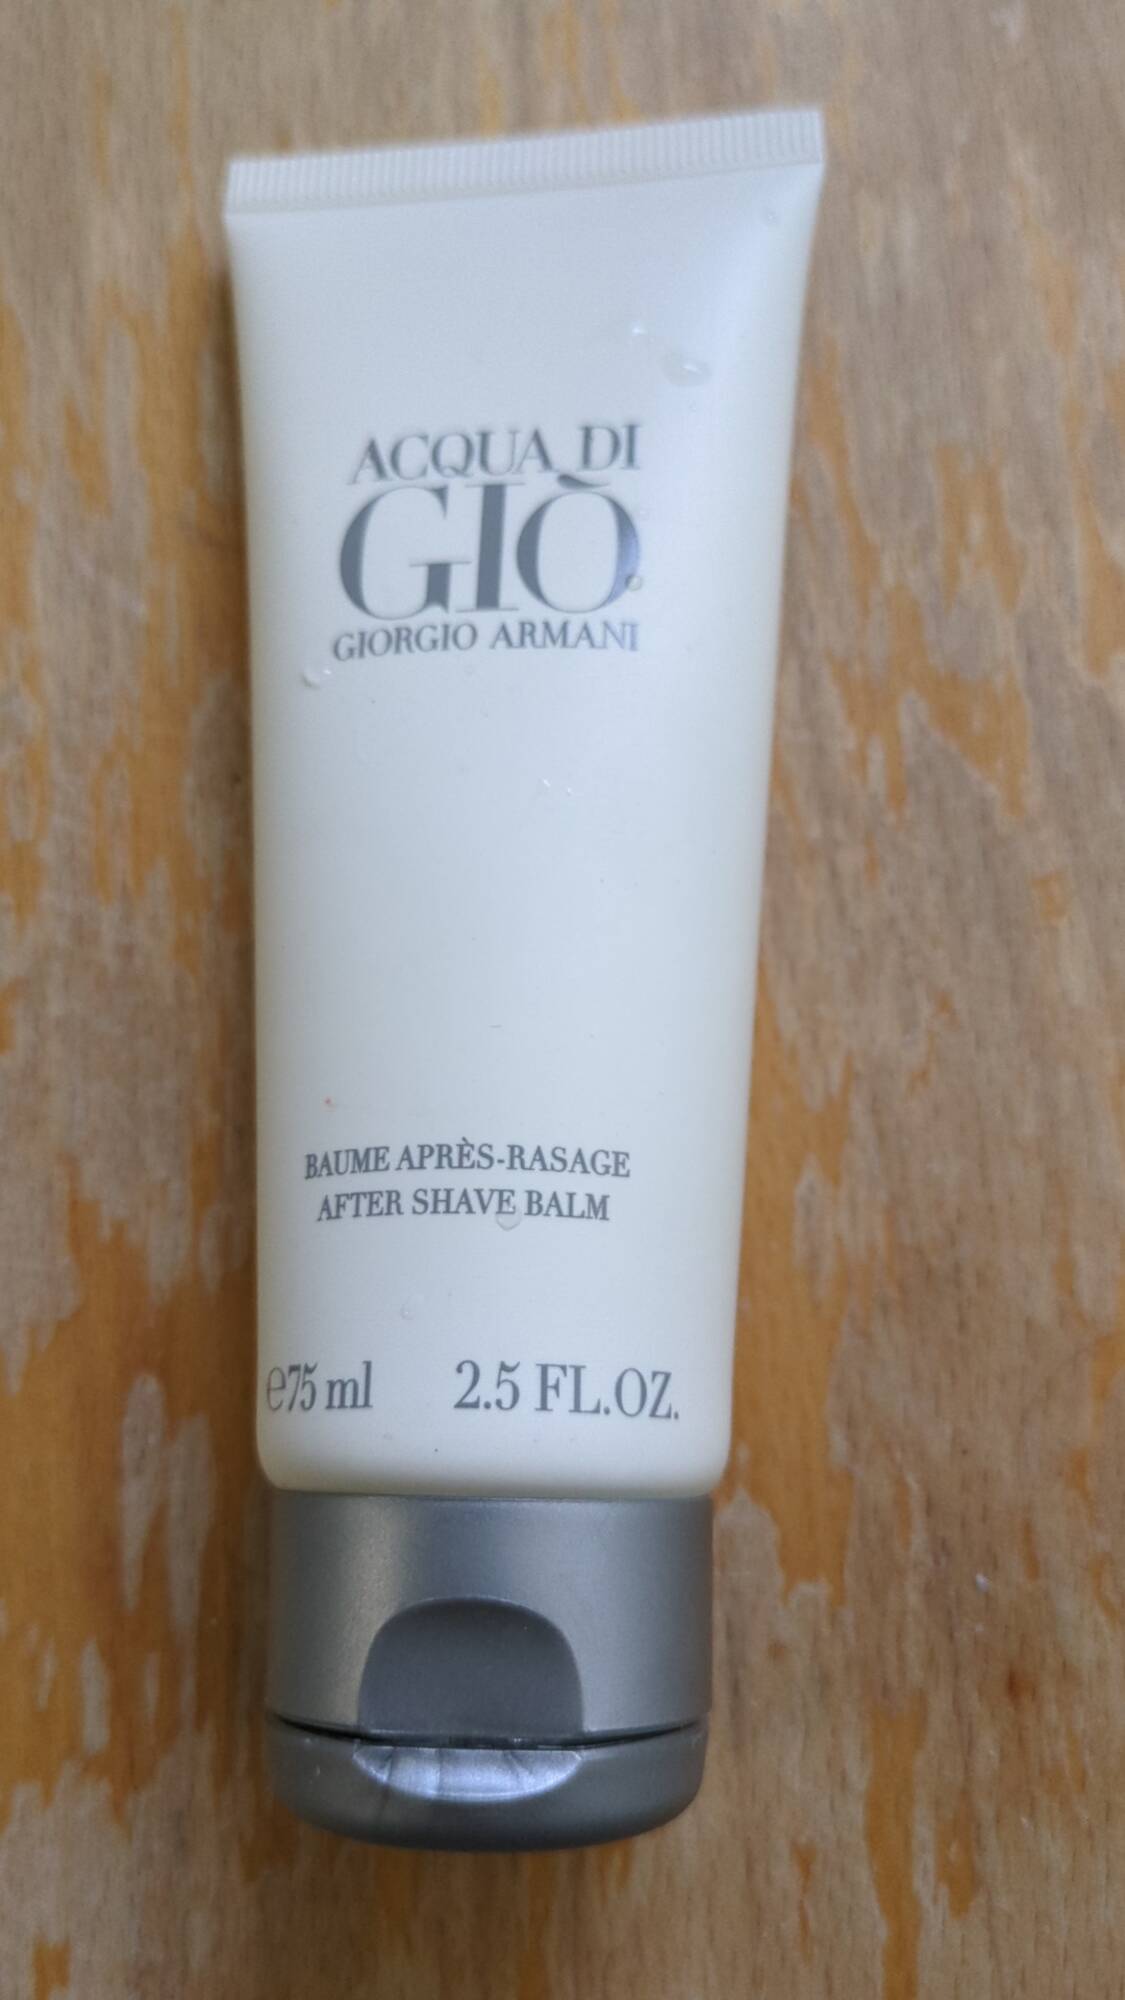 GIORGIO ARMANI - Acqua di Gio - Baume après-rasage